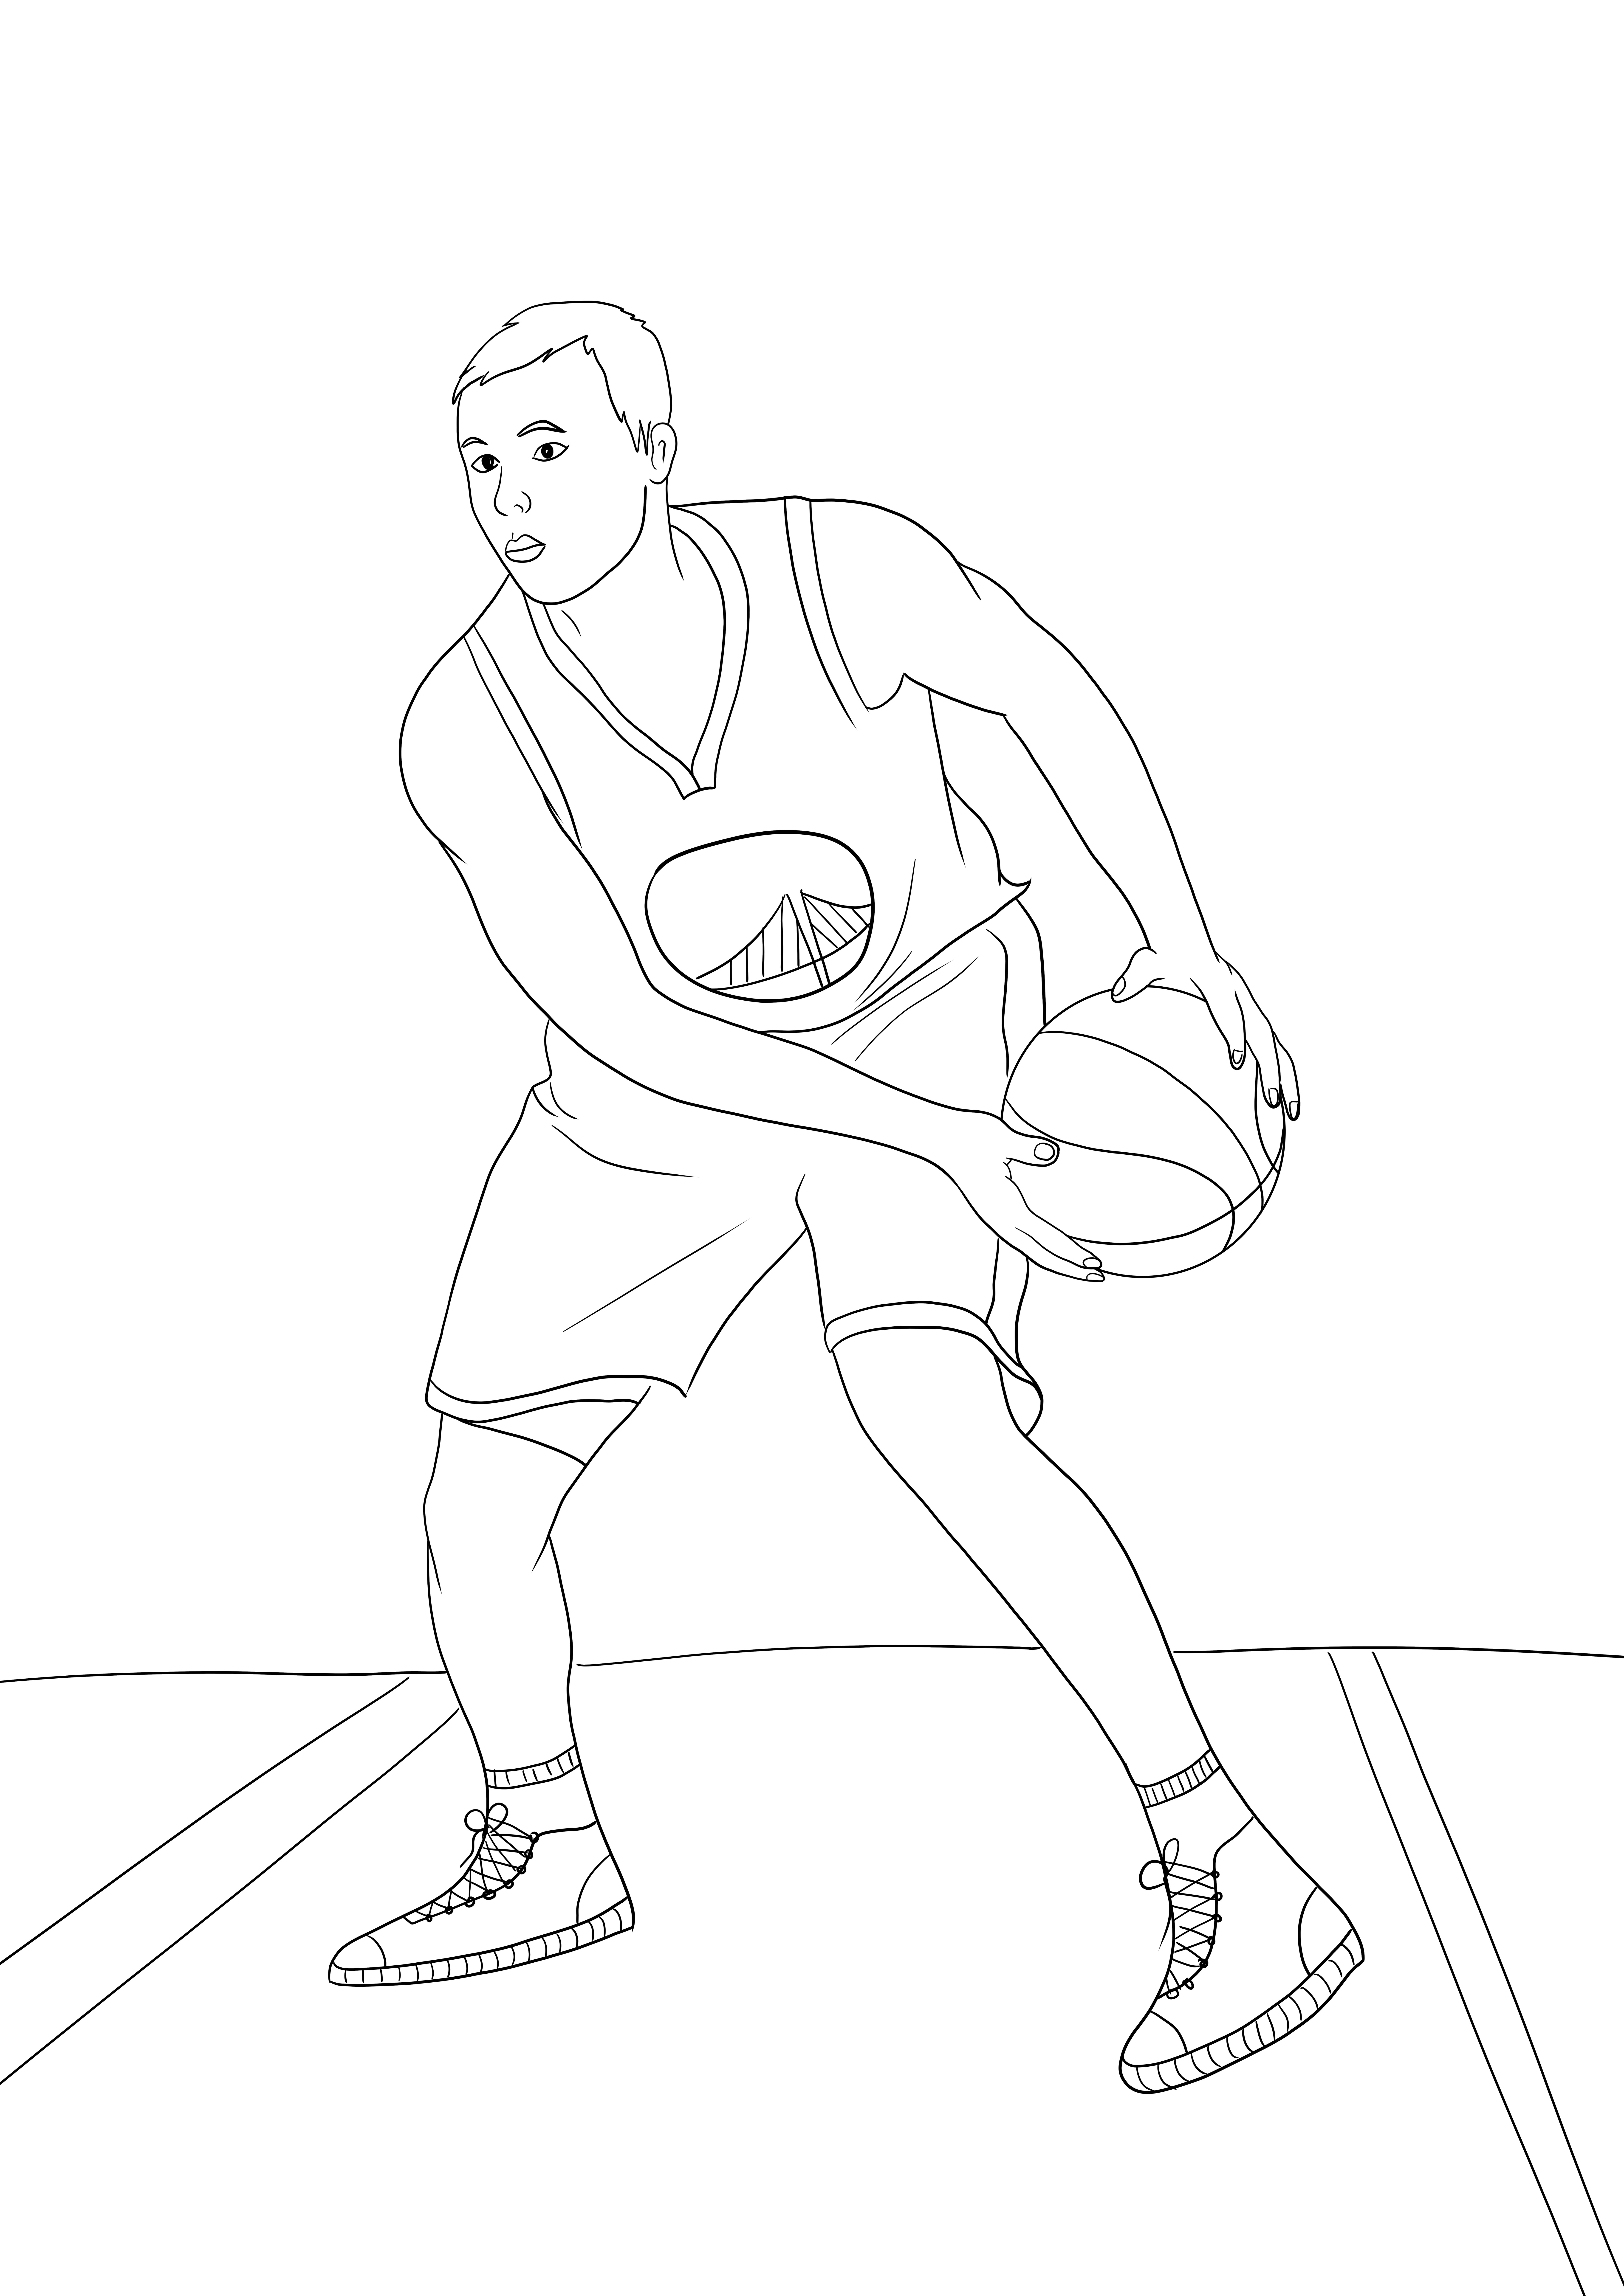 NBAのステフィン・カリーのシンプルな塗り絵と無料ダウンロード画像